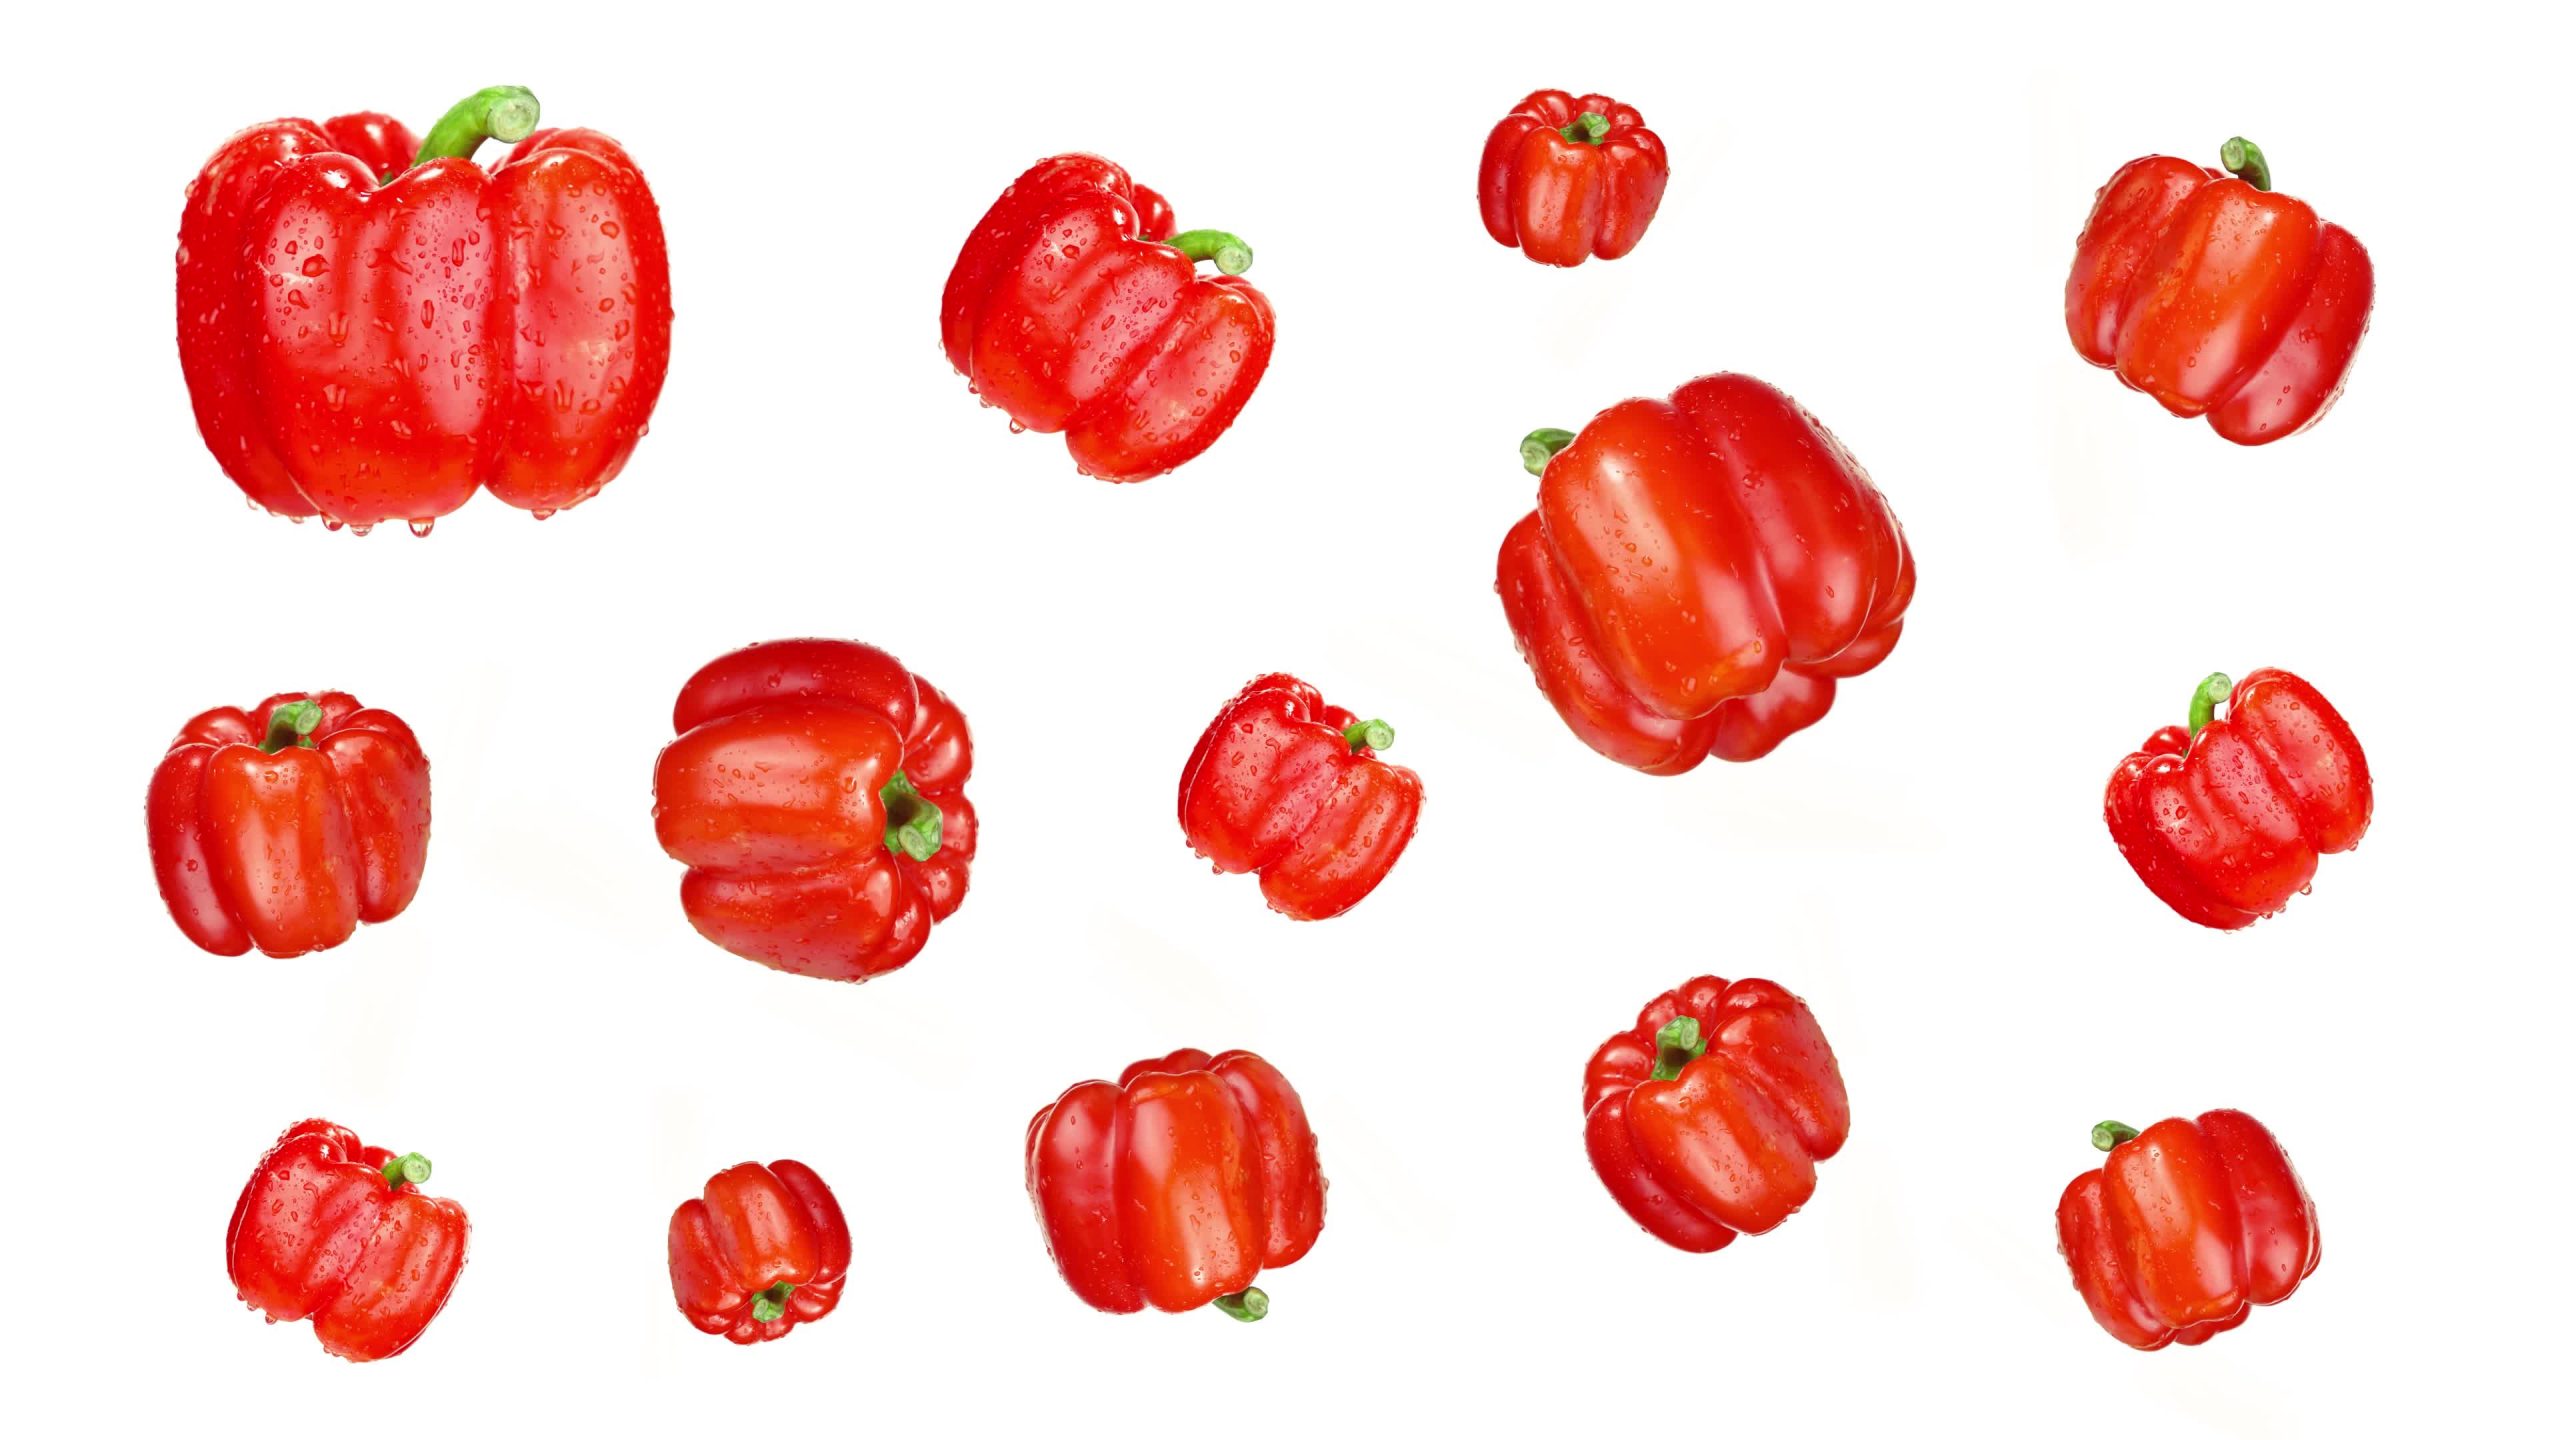 Raccolta di peperoni dolci rossi con gocce d’acqua su bianco